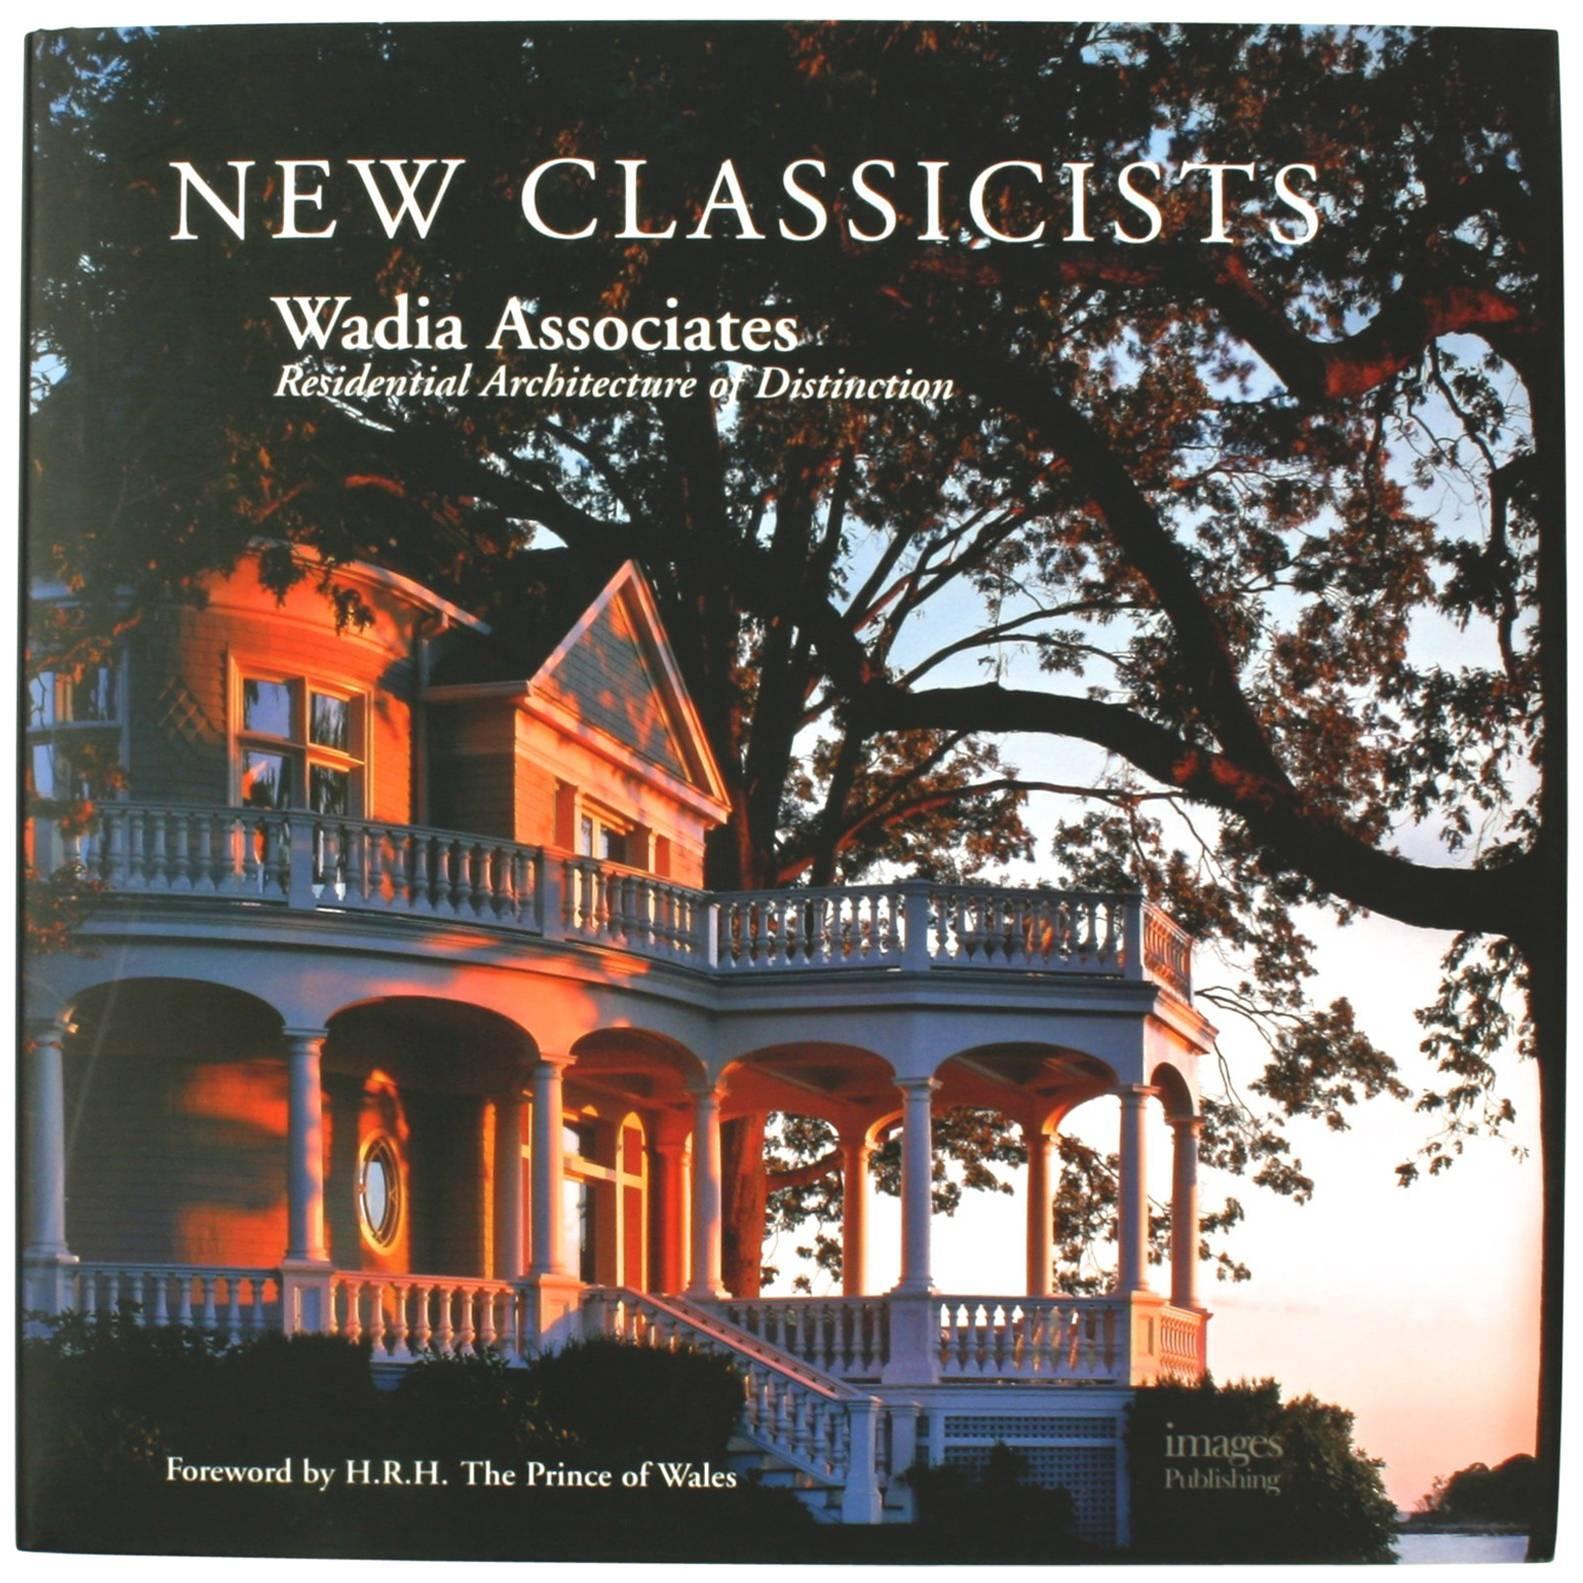 Les nouveaux classiques Wadia Associates, architecture résidentielle de distinction